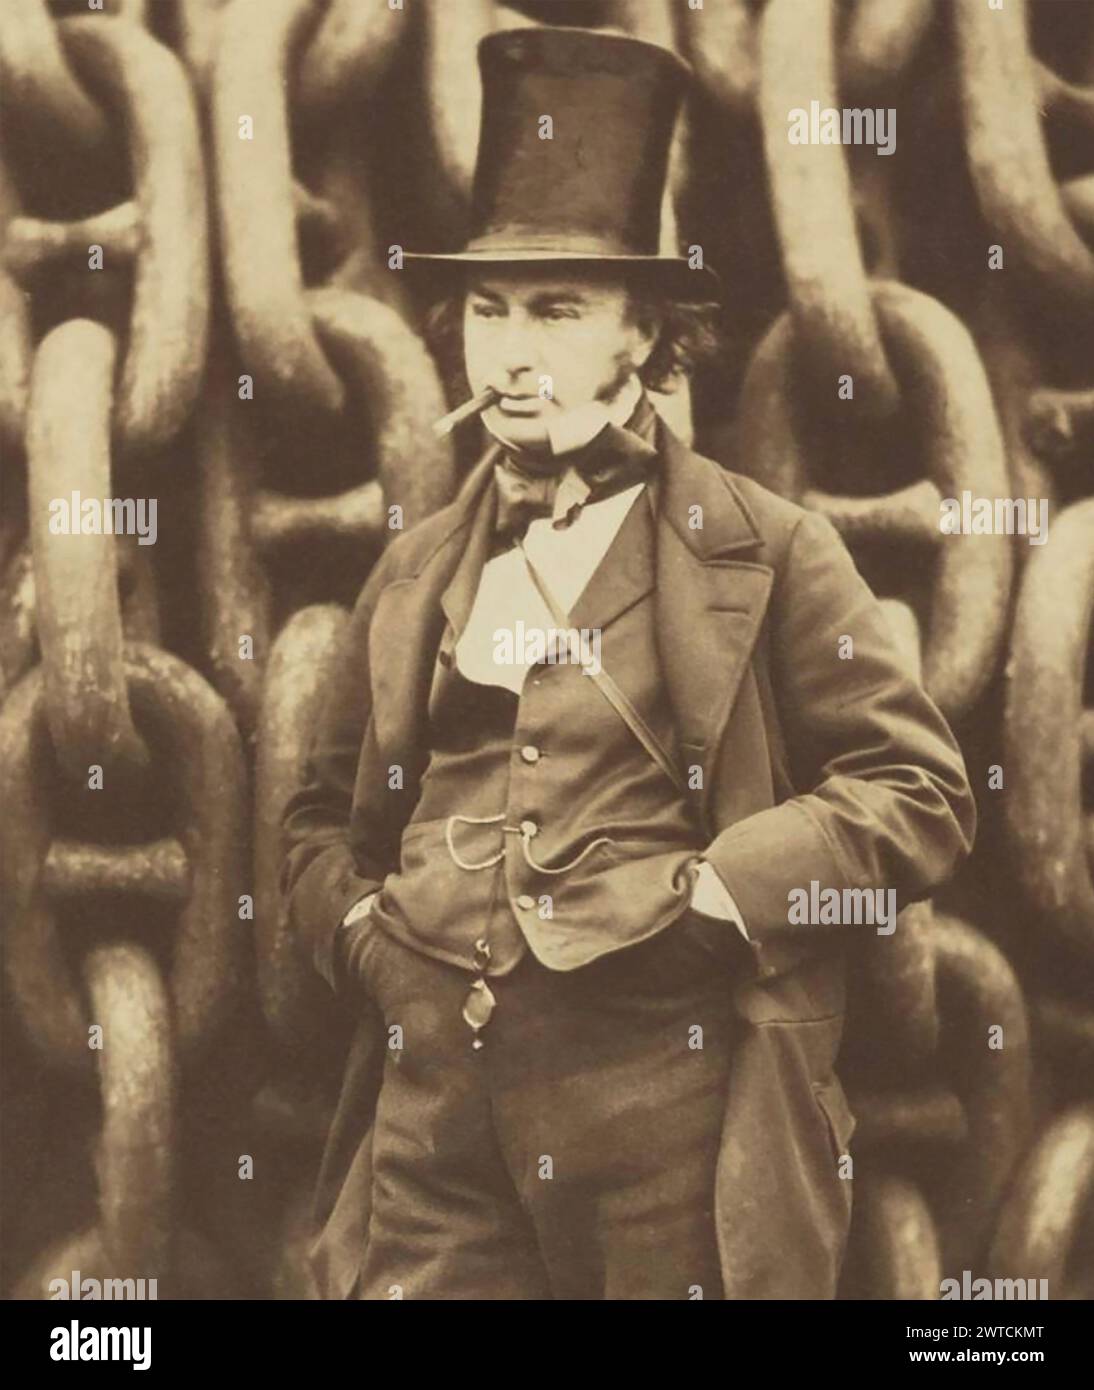 ISAMBARD KINGDOM BRUNEL (1806-1859) ingegnere civile e matematico britannico dettaglio della fotografia di fronte alle catene di lancio delle SS Great Britain di Robert Howlett nel 1857 Foto Stock